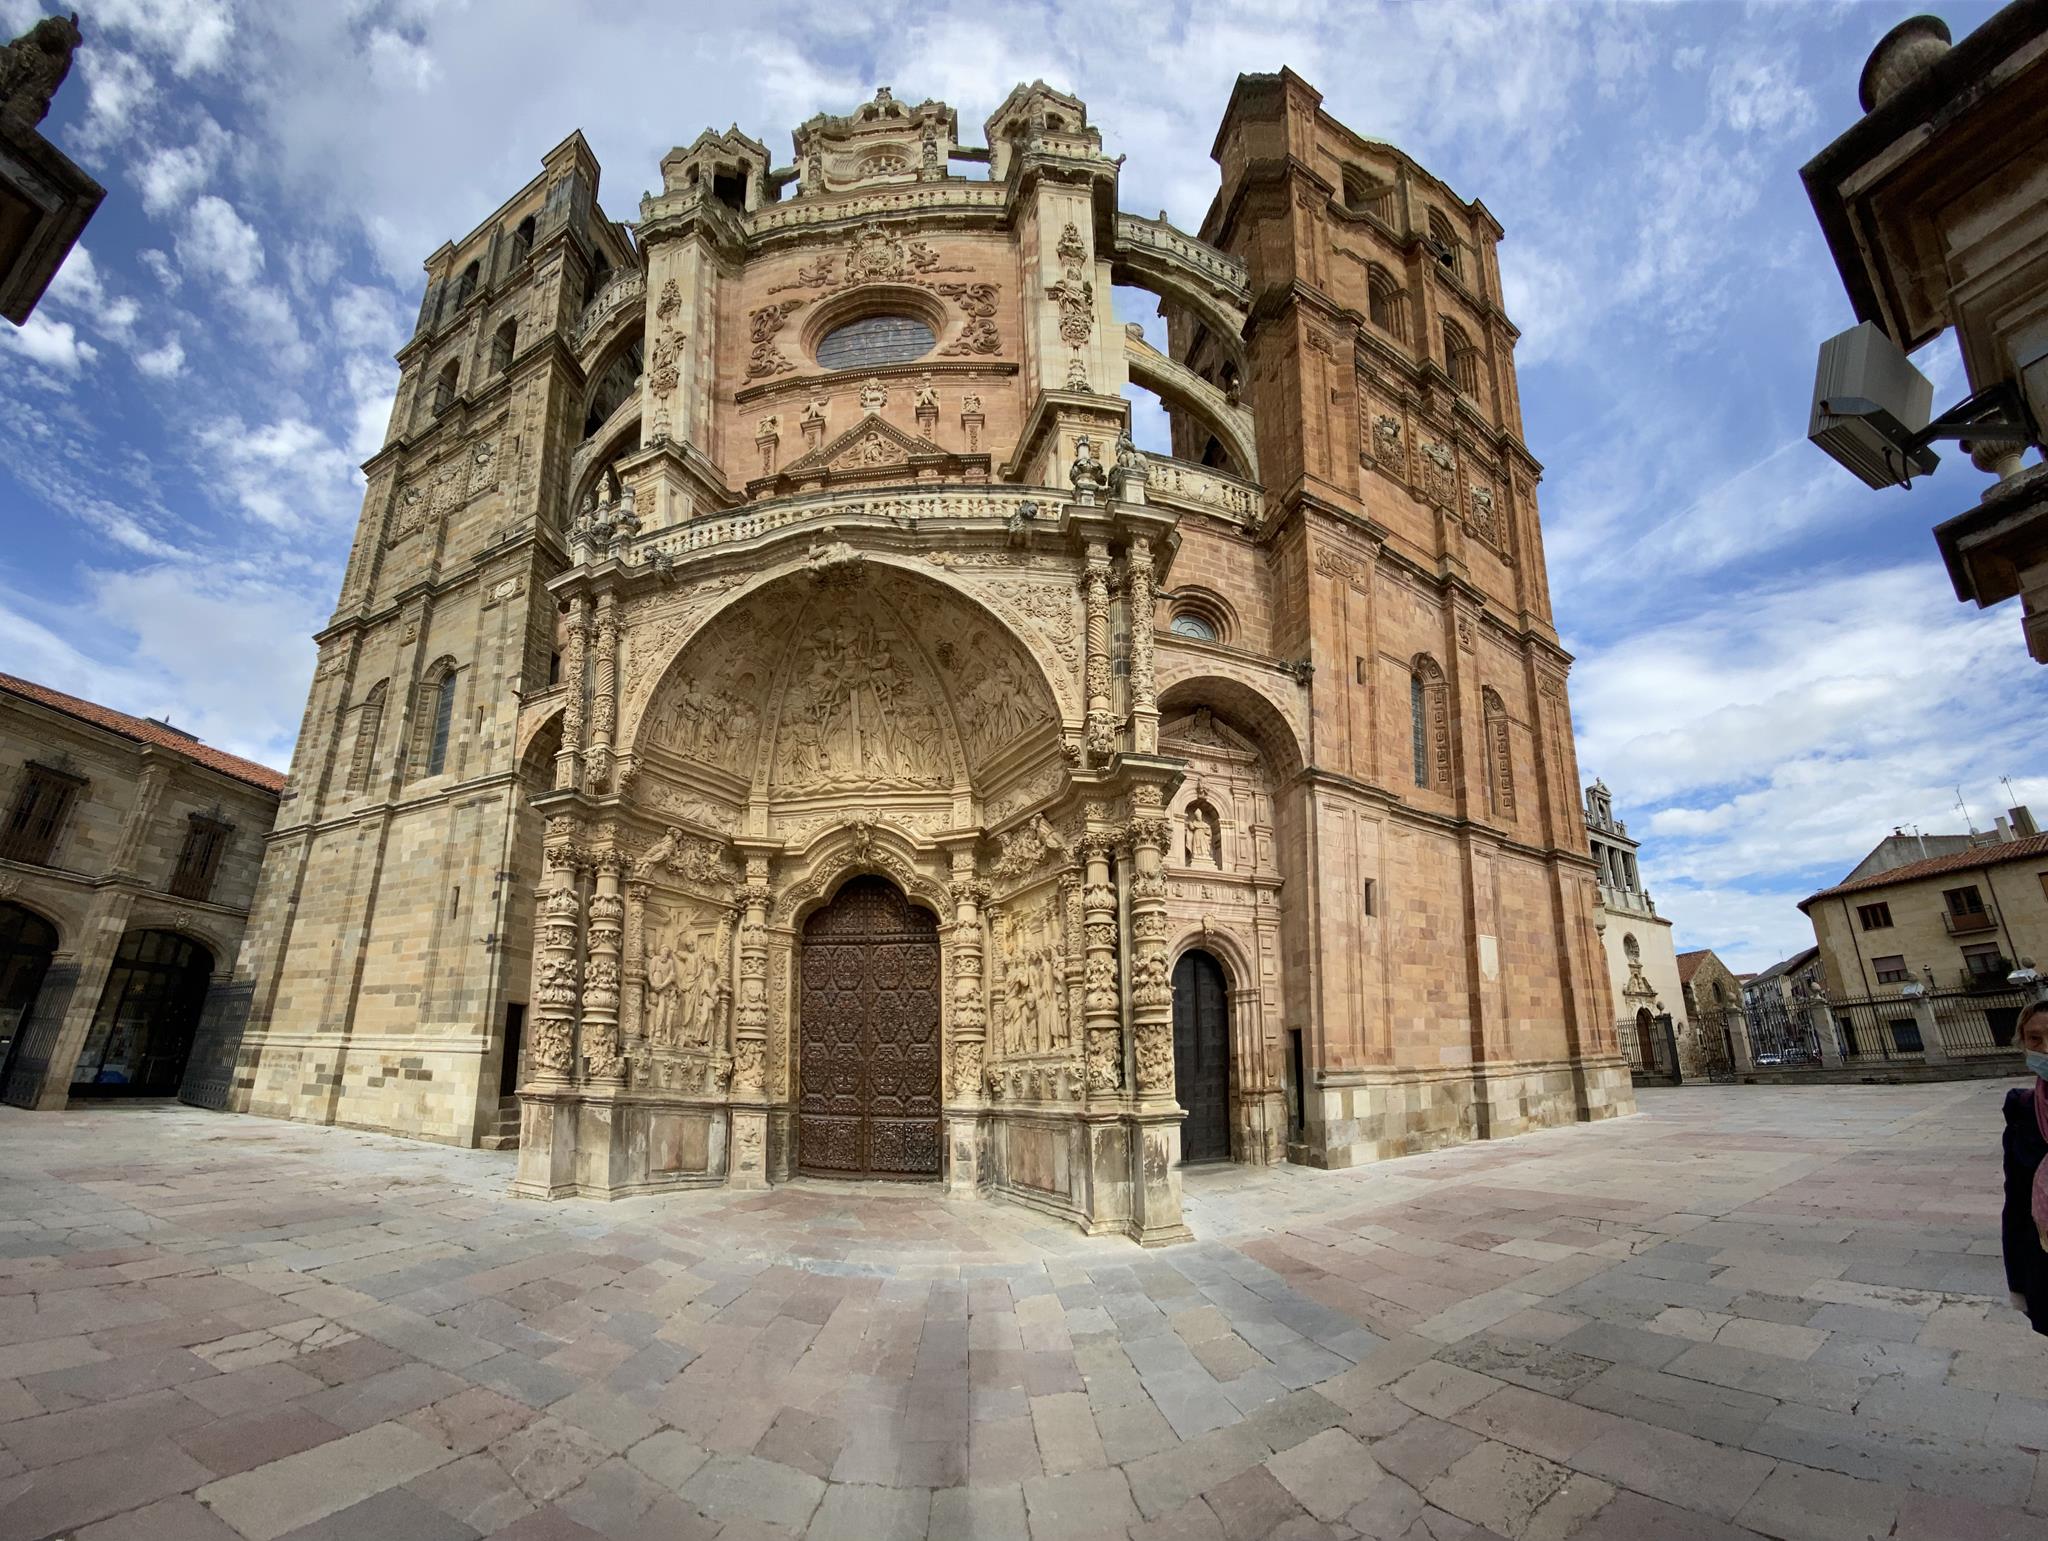 Conoce la Catedral de Astorga, uno de los principales monumentos de esta ciudad bimilenaria con pasado romano.